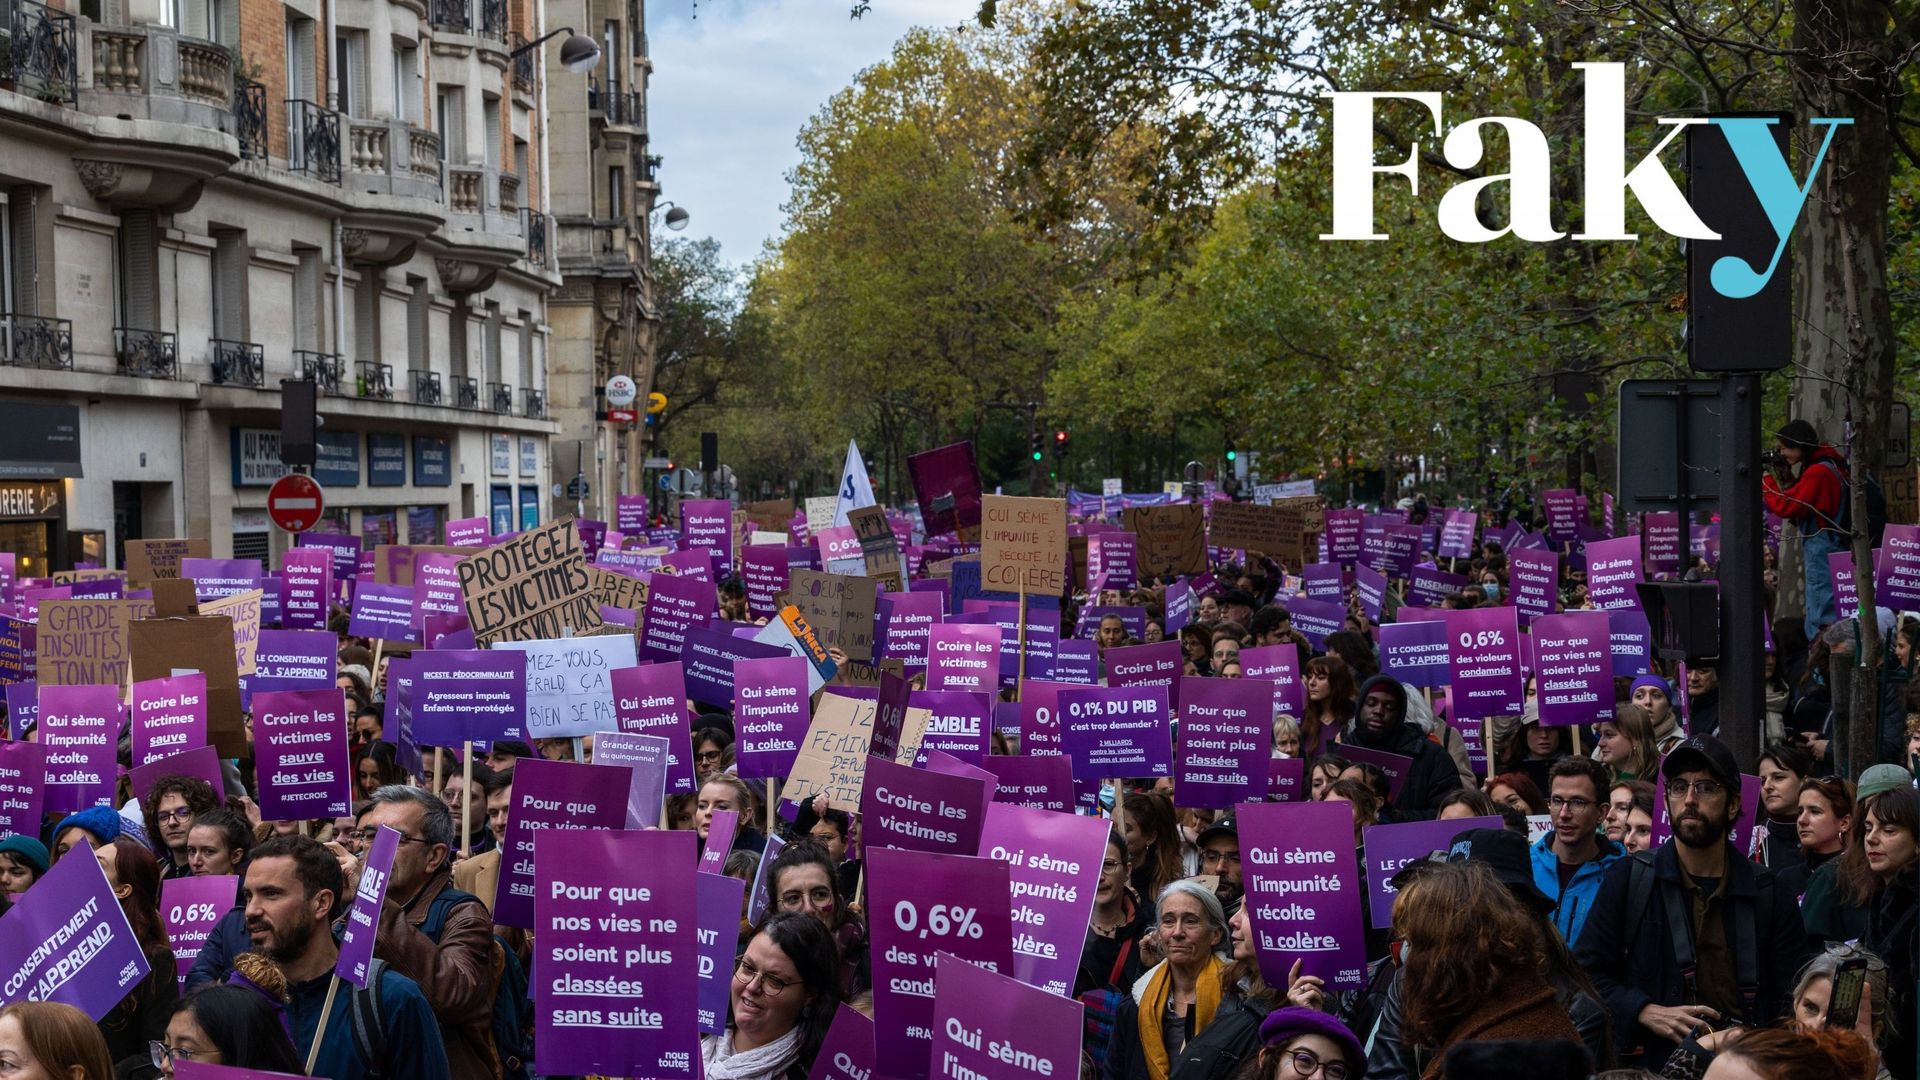 Ce 19 novembre 2022, dans les rues de Paris, plusieurs dizaines de milliers de personnes ont manifesté contre les violences sexistes et sexuelles et pour dénoncer les dysfonctionnements de la justice dans la lutte contre les violences sexistes et sexuelle